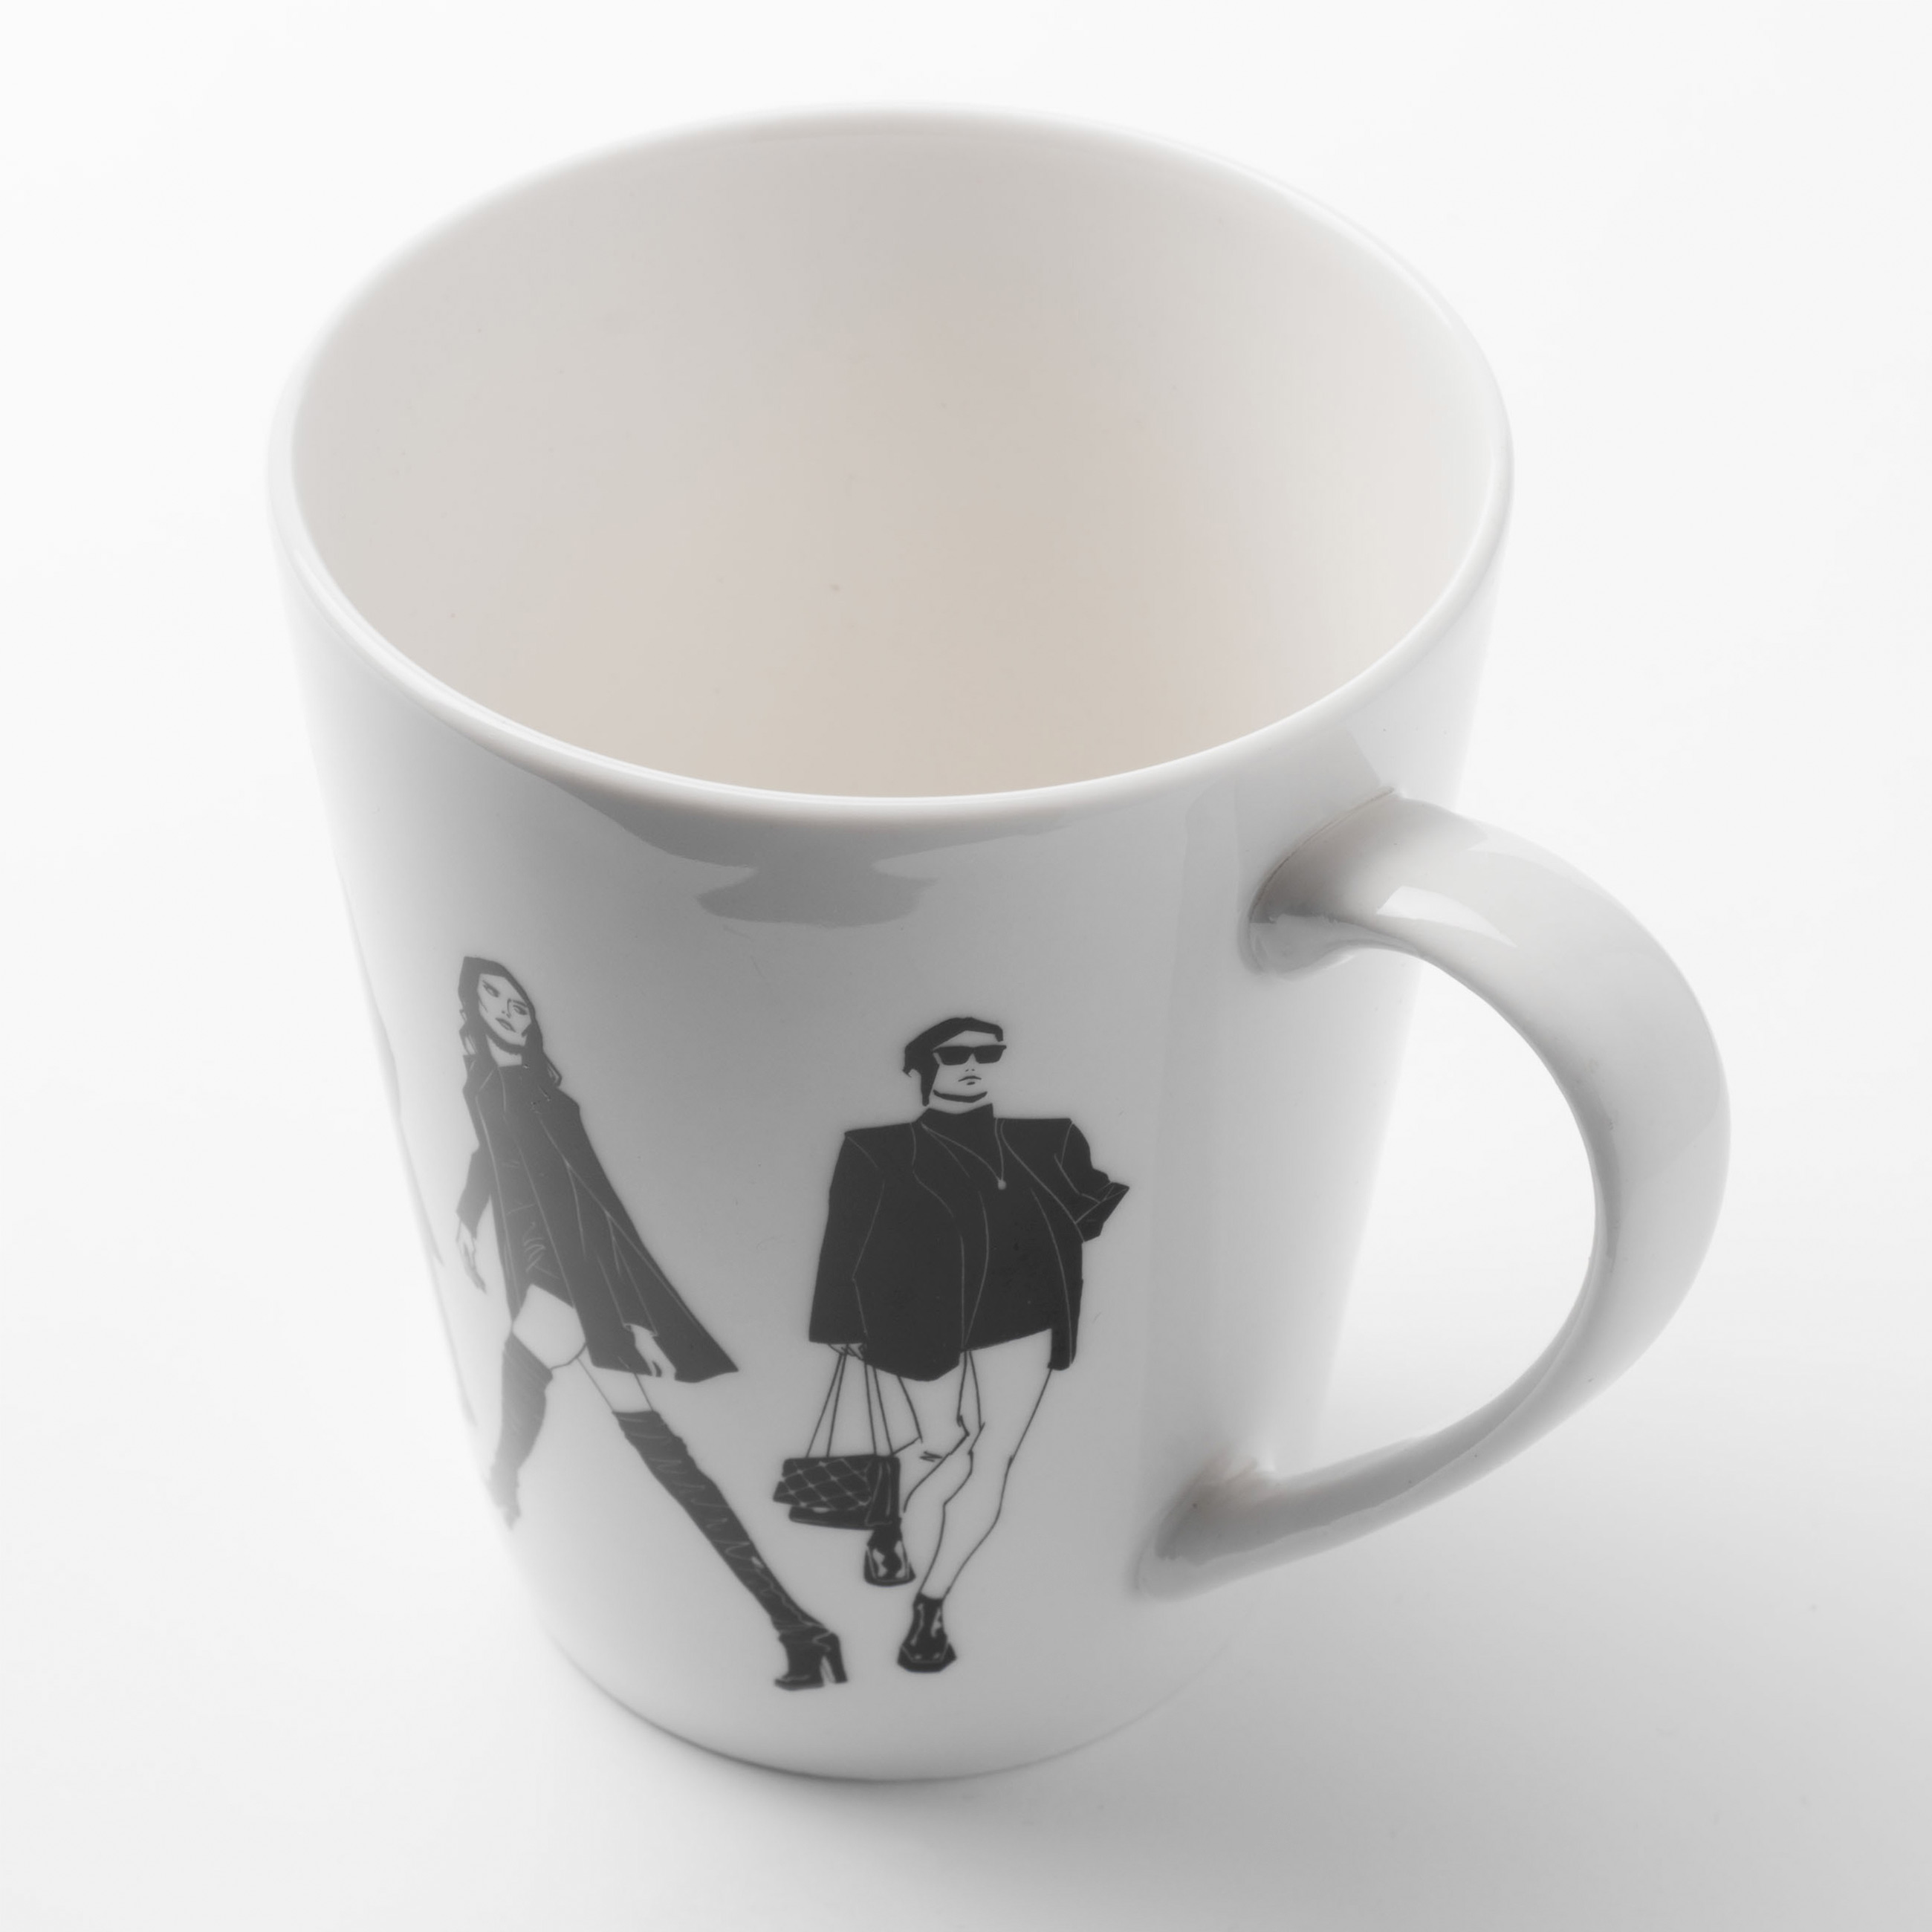 Mug, 420 ml, porcelain N, White, Girls, Girls изображение № 3